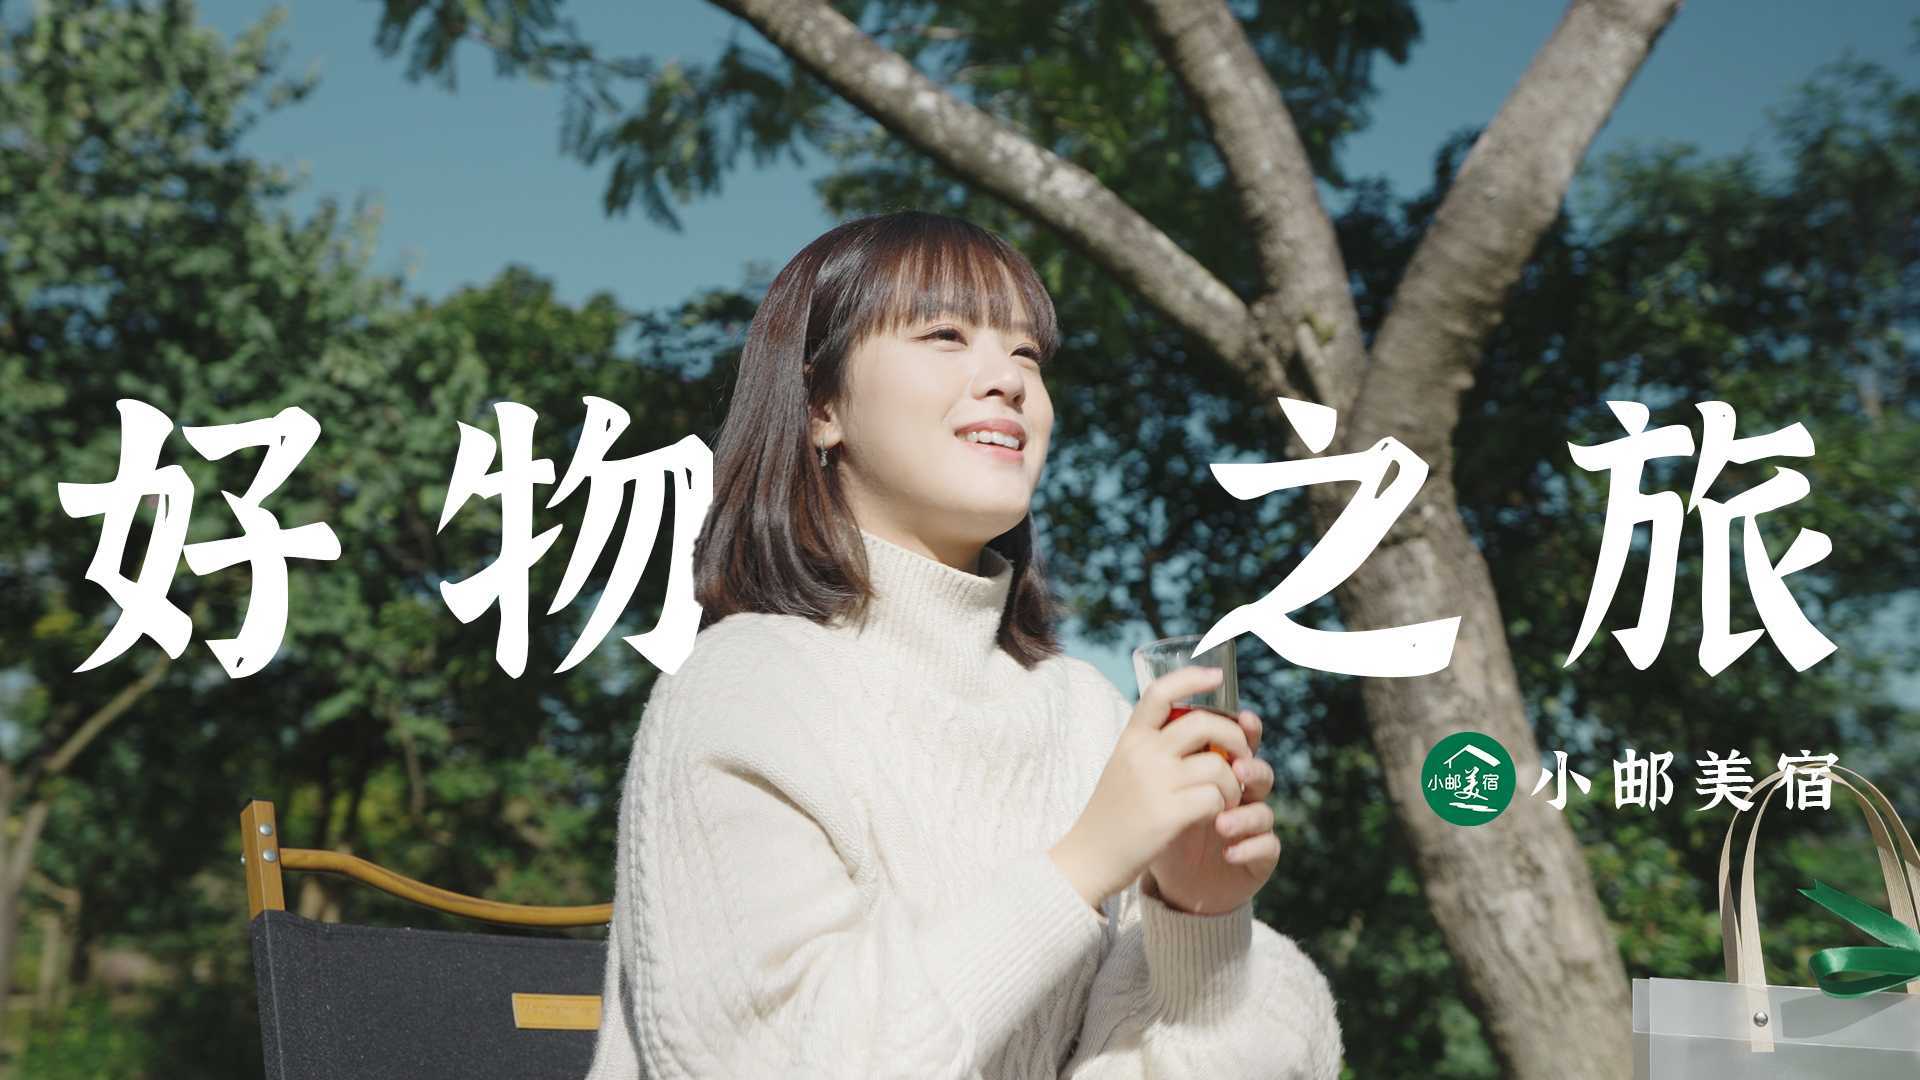 《好物之旅》广东邮政小邮美宿小程序广告宣传片